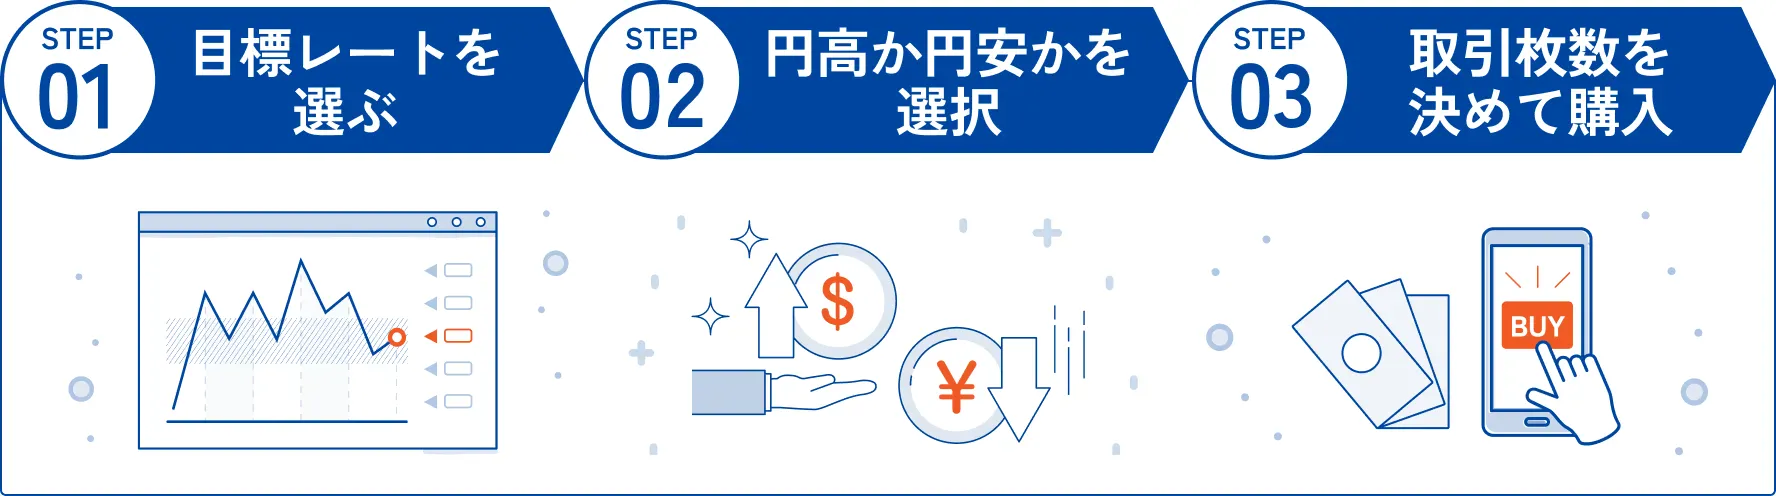 STEP1目標レートを選ぶ STEP2円高か円安かを選択 STEP3取引枚数を決めて購入